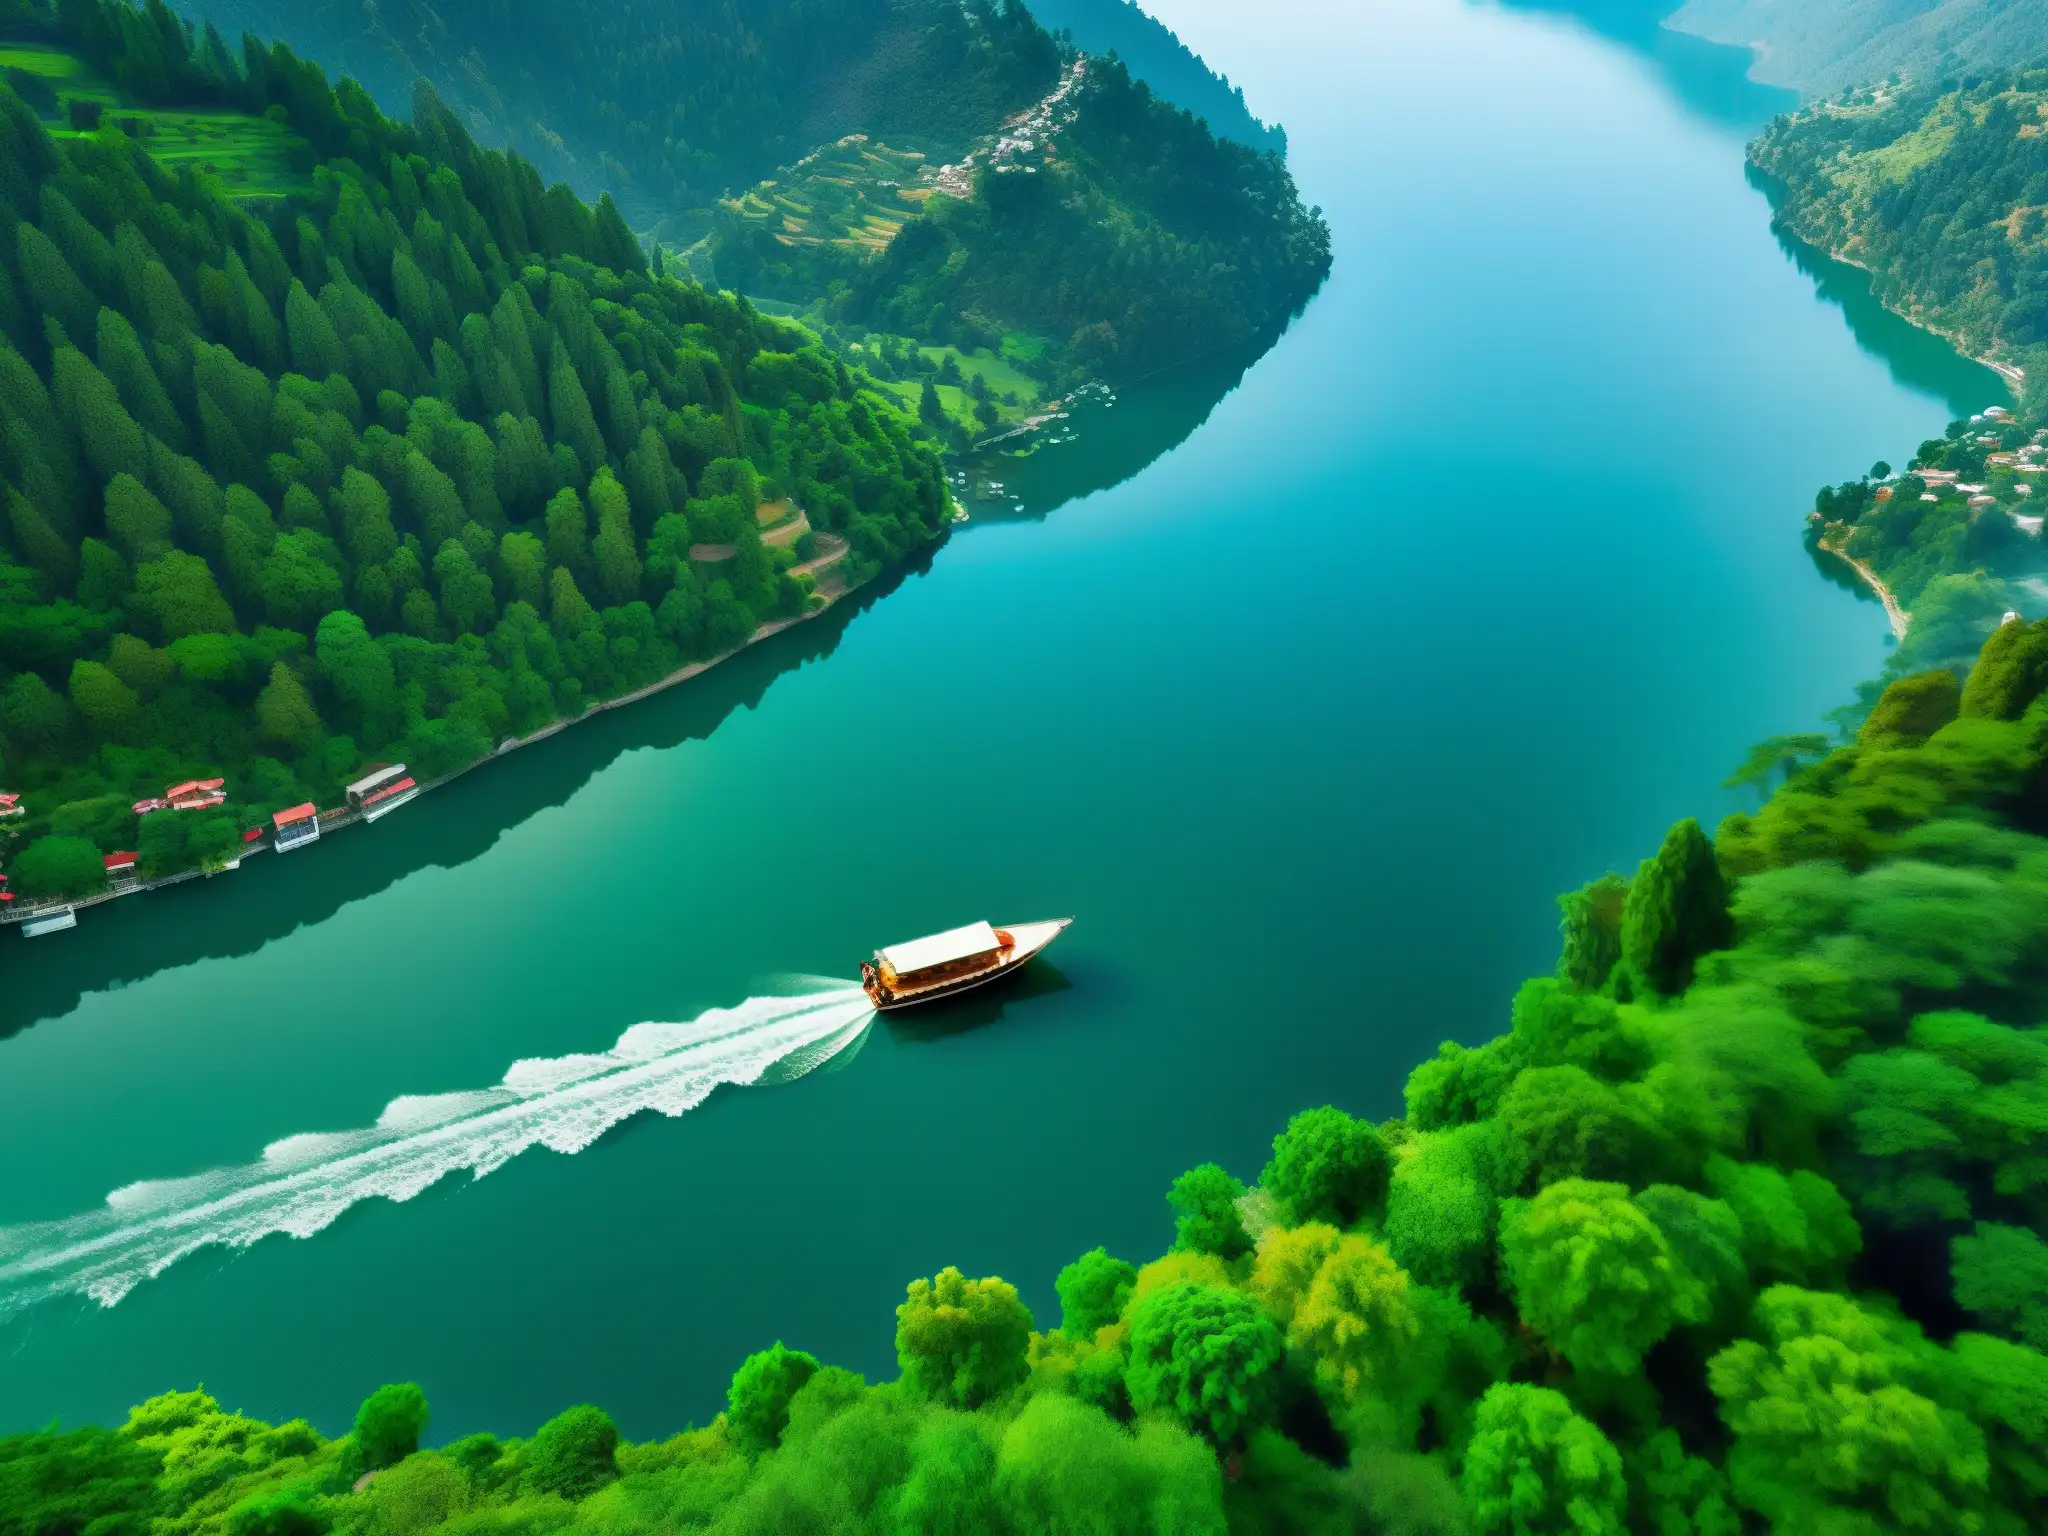 Misterio y serenidad en la imagen de la legendaria dama del lago Nainital, reflejando su belleza en el agua cristalina